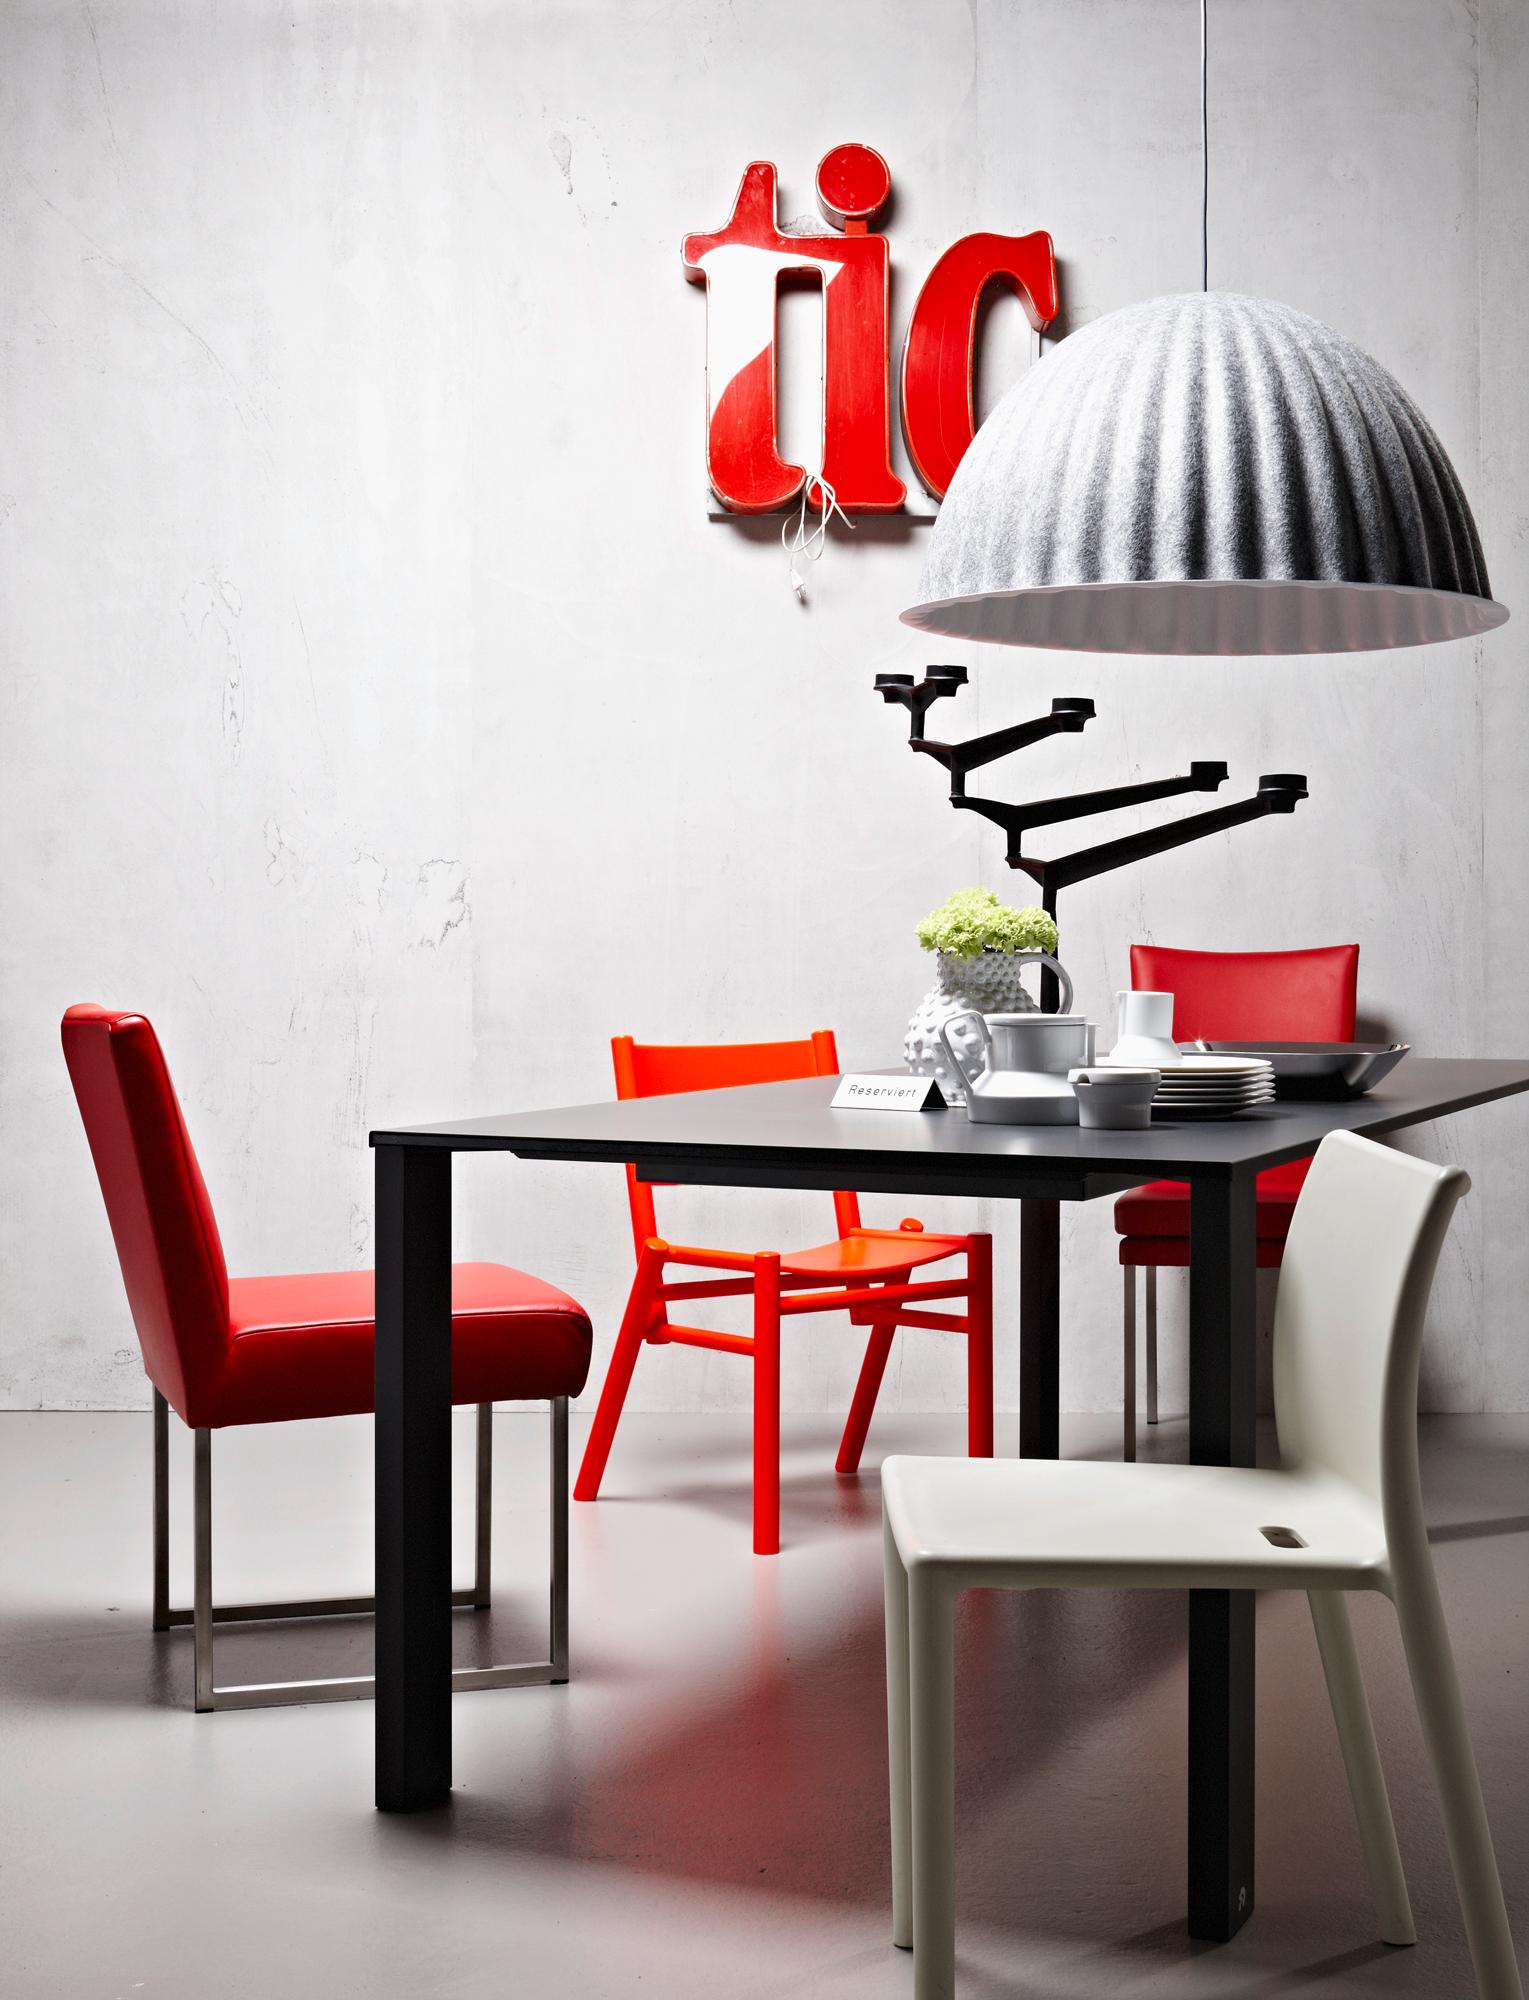 Signale Setzen - Stühle und Tisch im Dialog #esstisch #hängeleuchte #metalltisch ©Schöner Wohnen/Jonas von der Hude